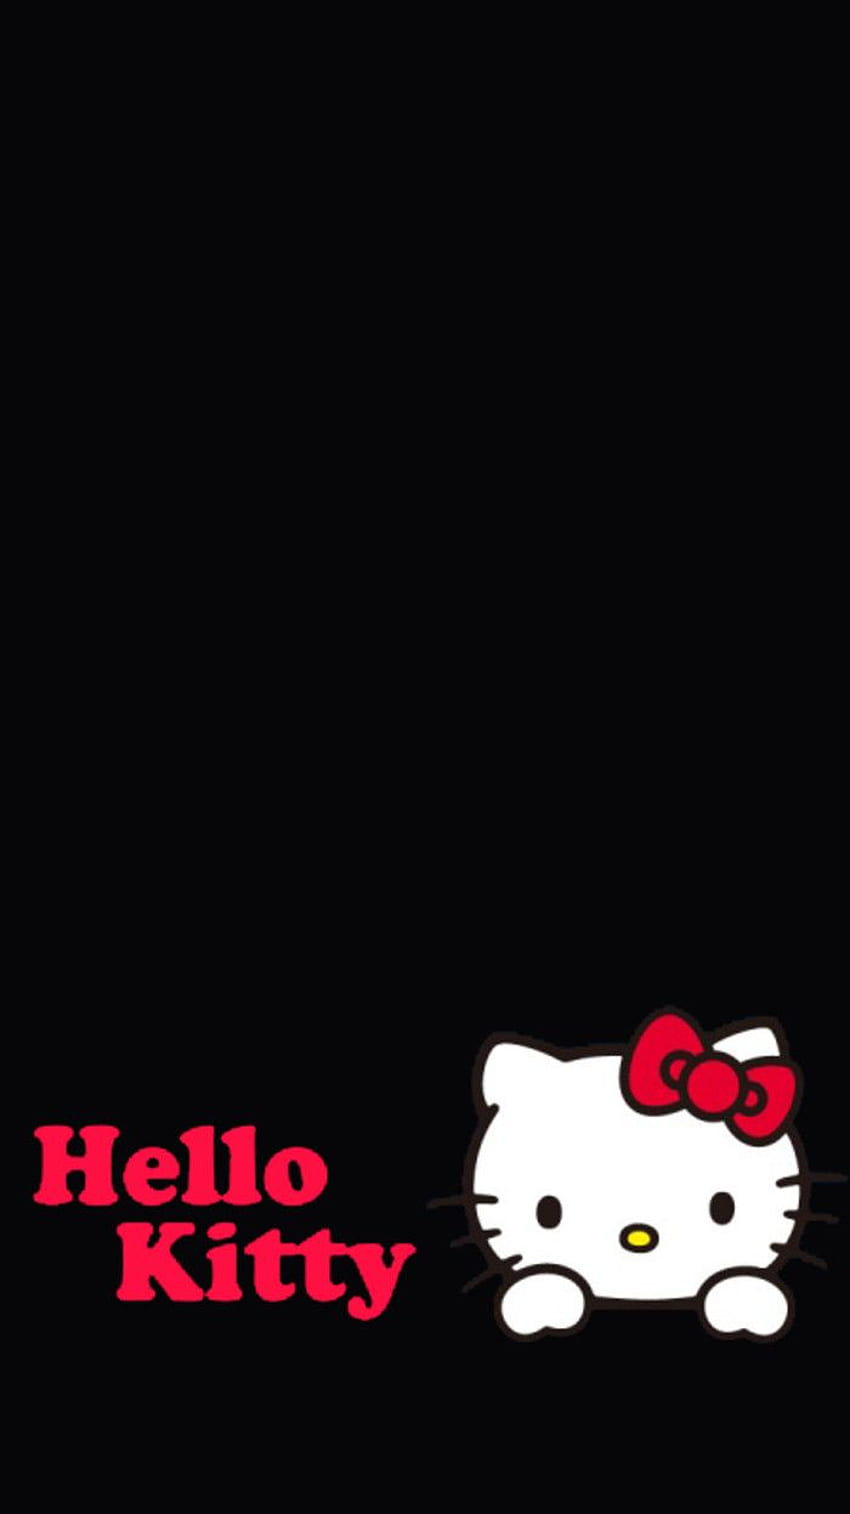 hello kitty phone 56dd955359a44b1eb9db4063a5490cbb, Cute Hello Kitty Halloween HD phone wallpaper